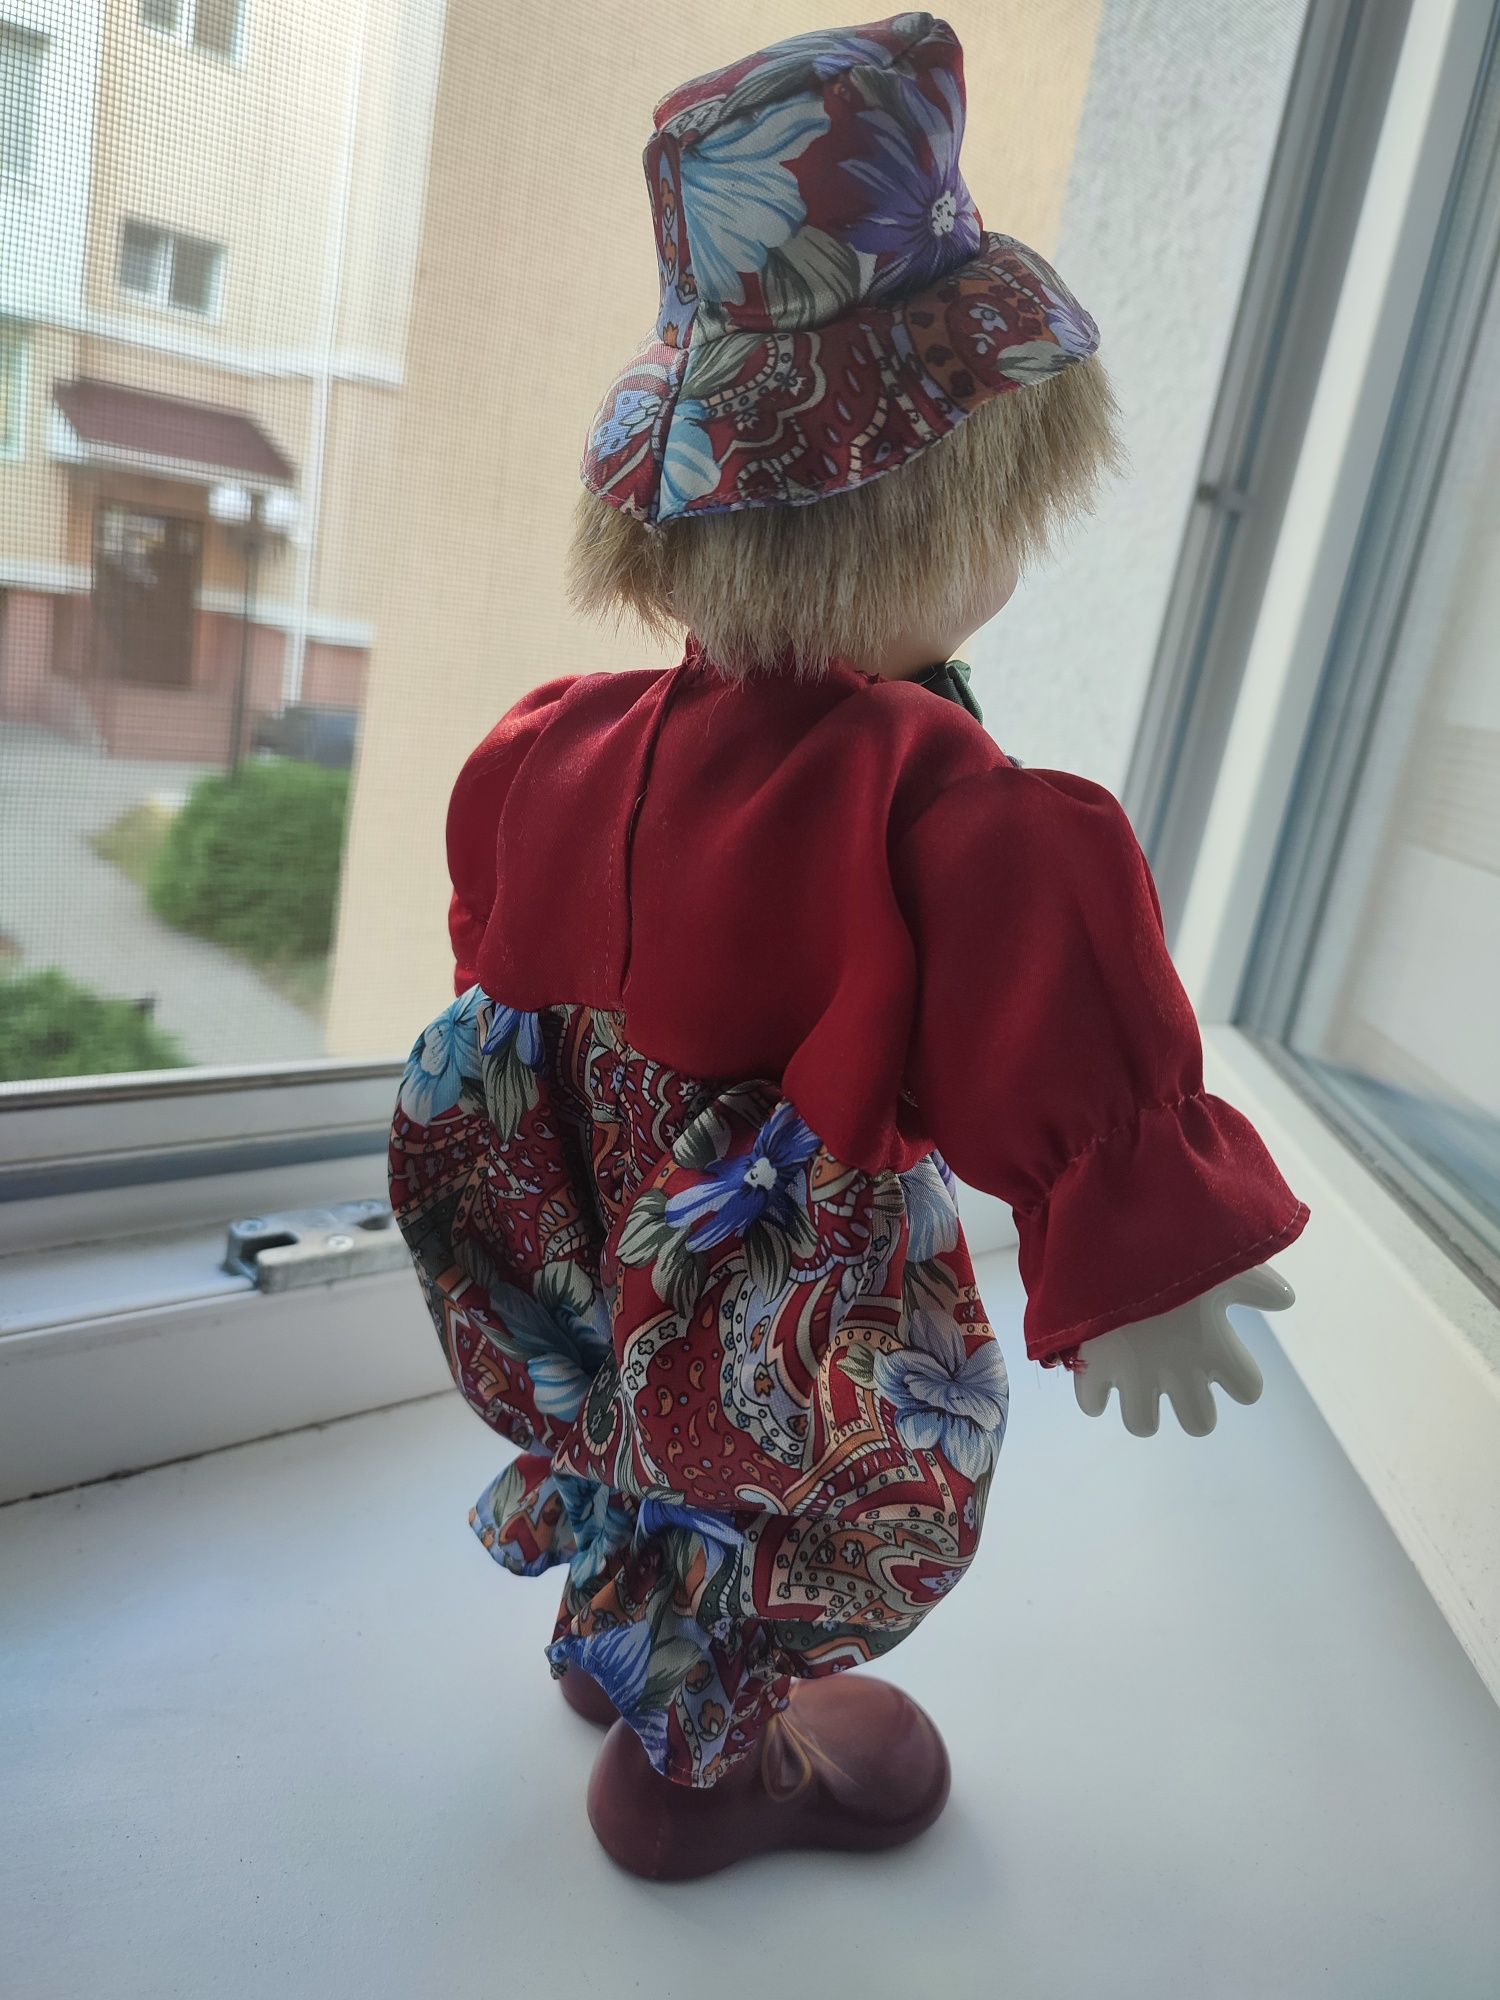 Кукла  коллекция клоун из Германии